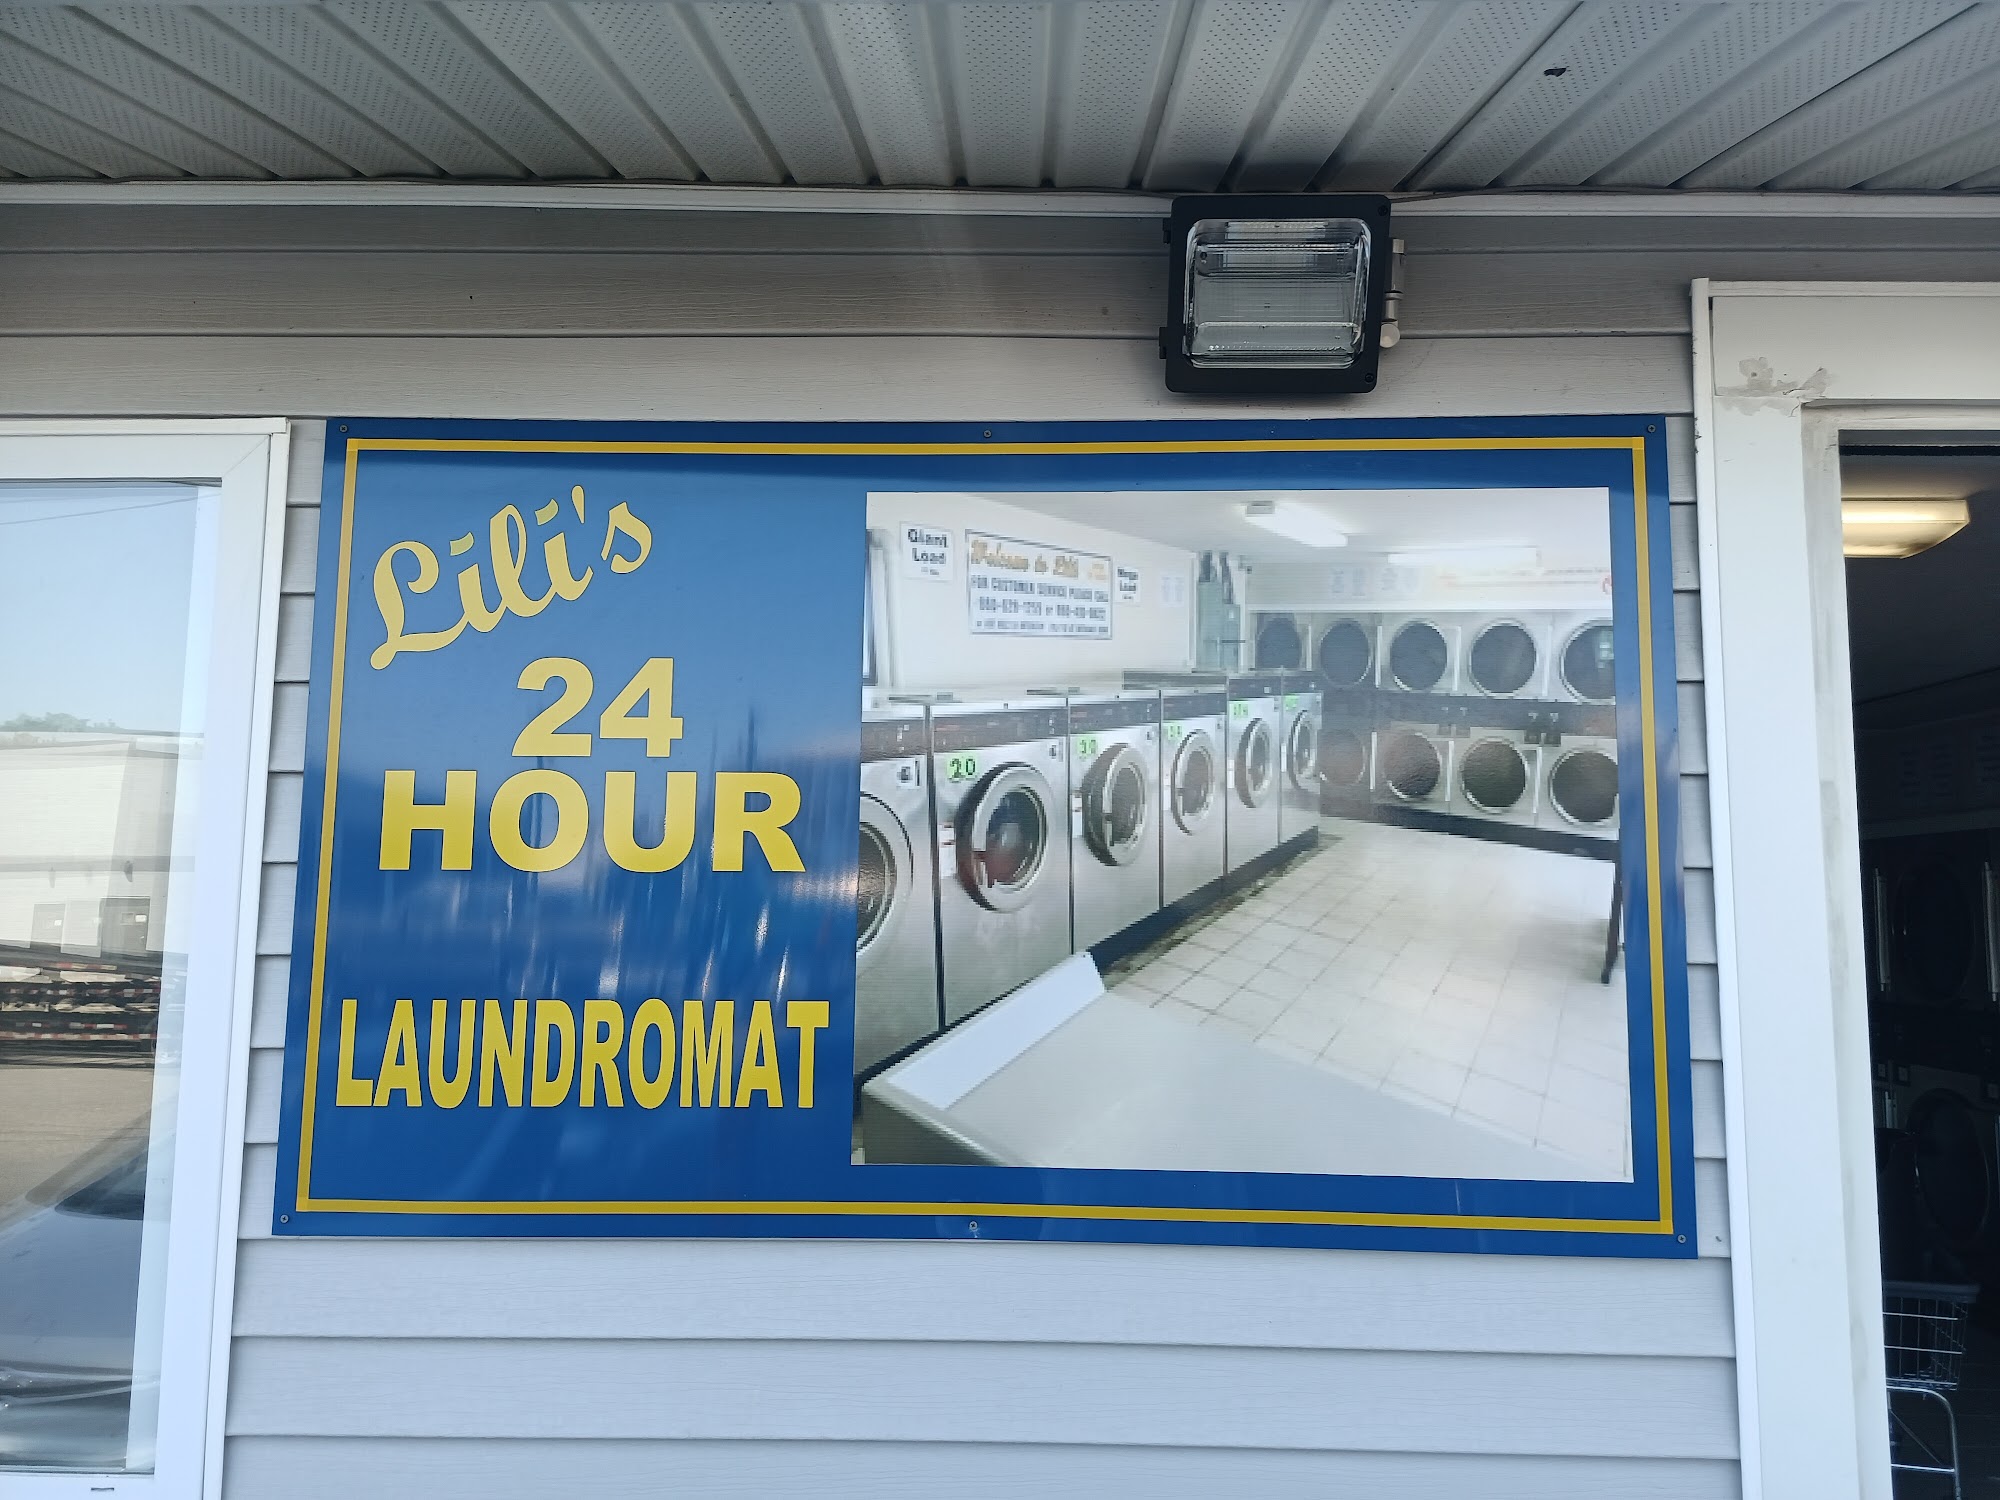 Lili's Laundromat